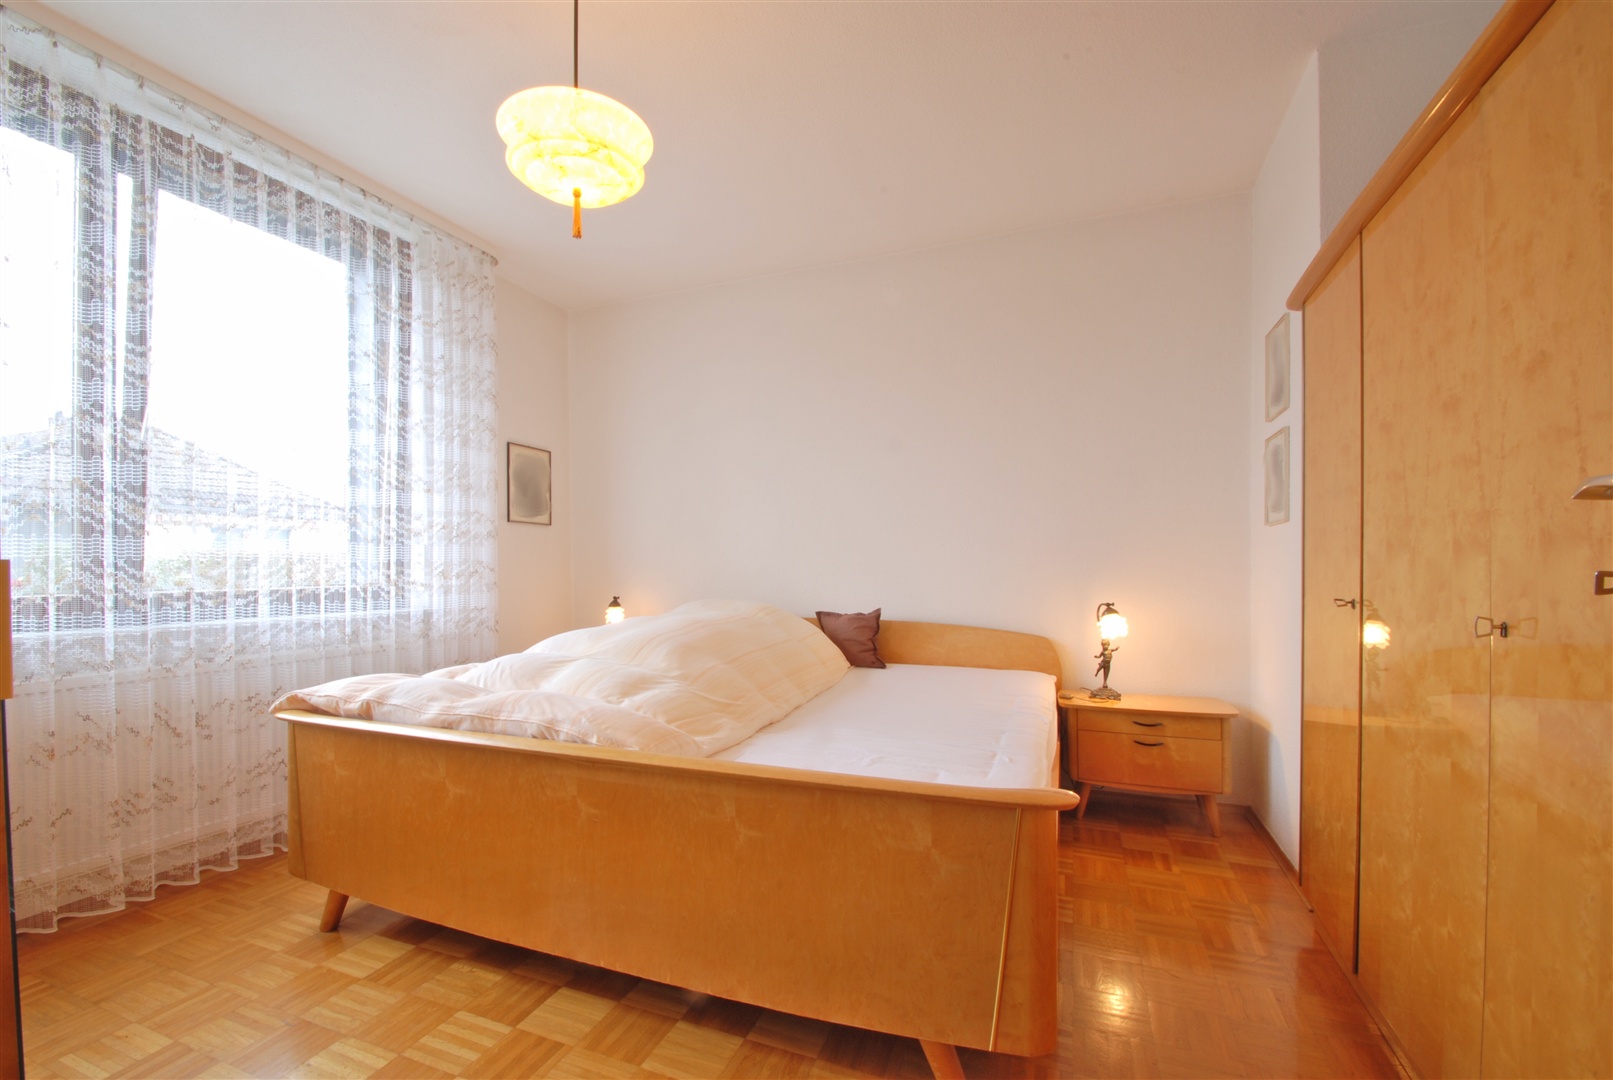 Schlafzimmer im Erdgeschoß mit Stäbchenparkett - Oliver Reifferscheid - Immobilienmakler Darmstadt